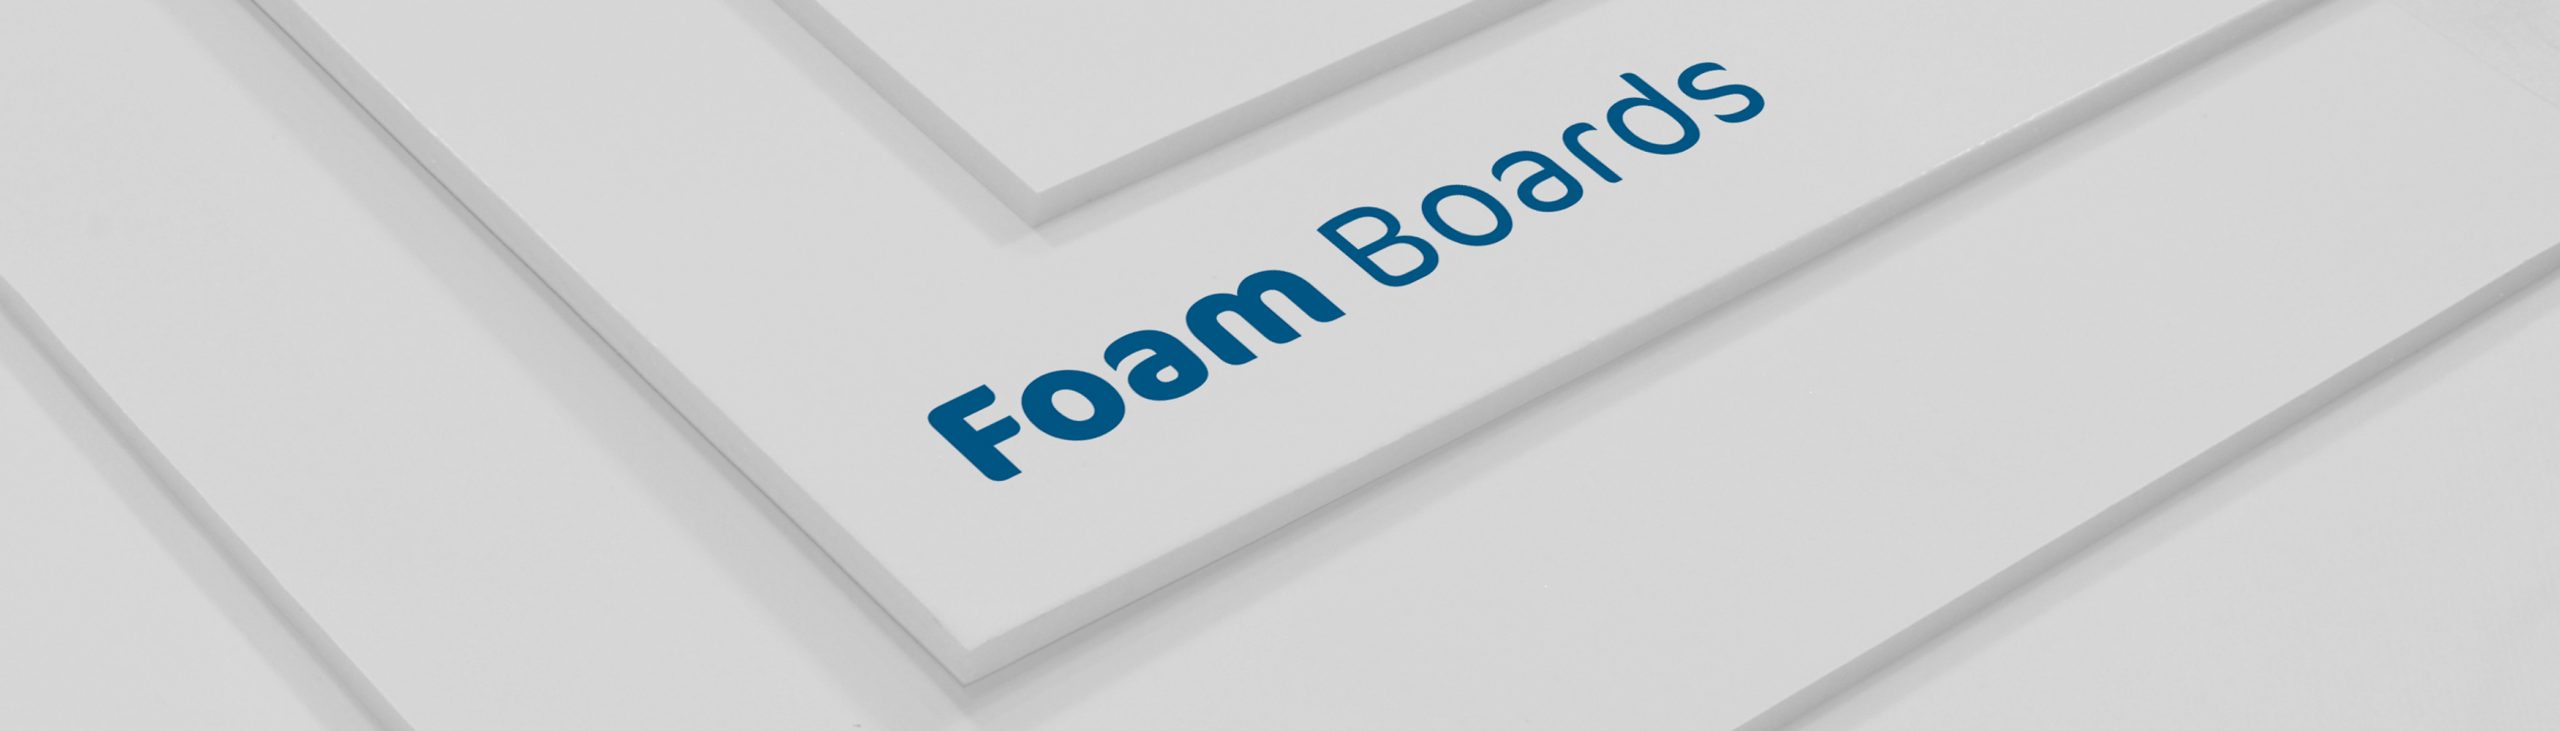 Foam boards: printing service in sheffield